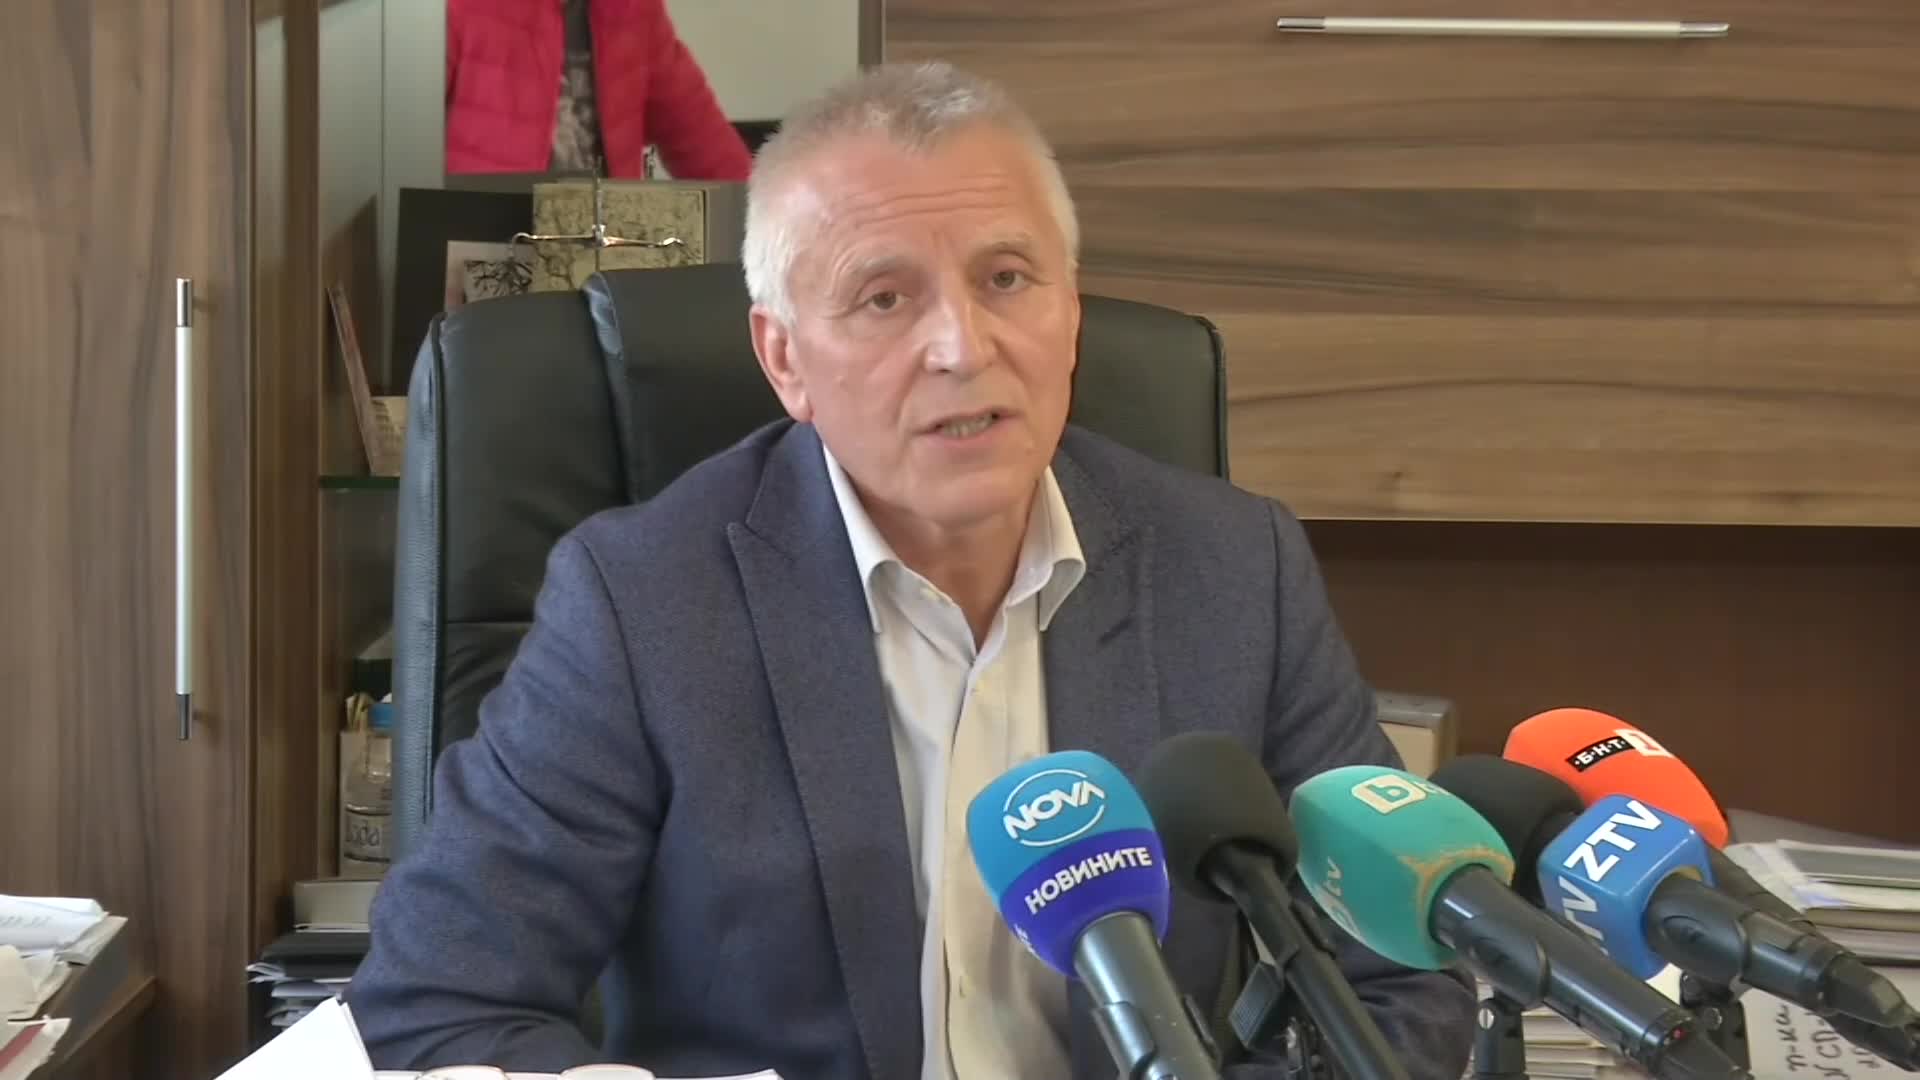 Брифинг на прокуратурата в Ловеч за катастрофата с Ферарио Спасов